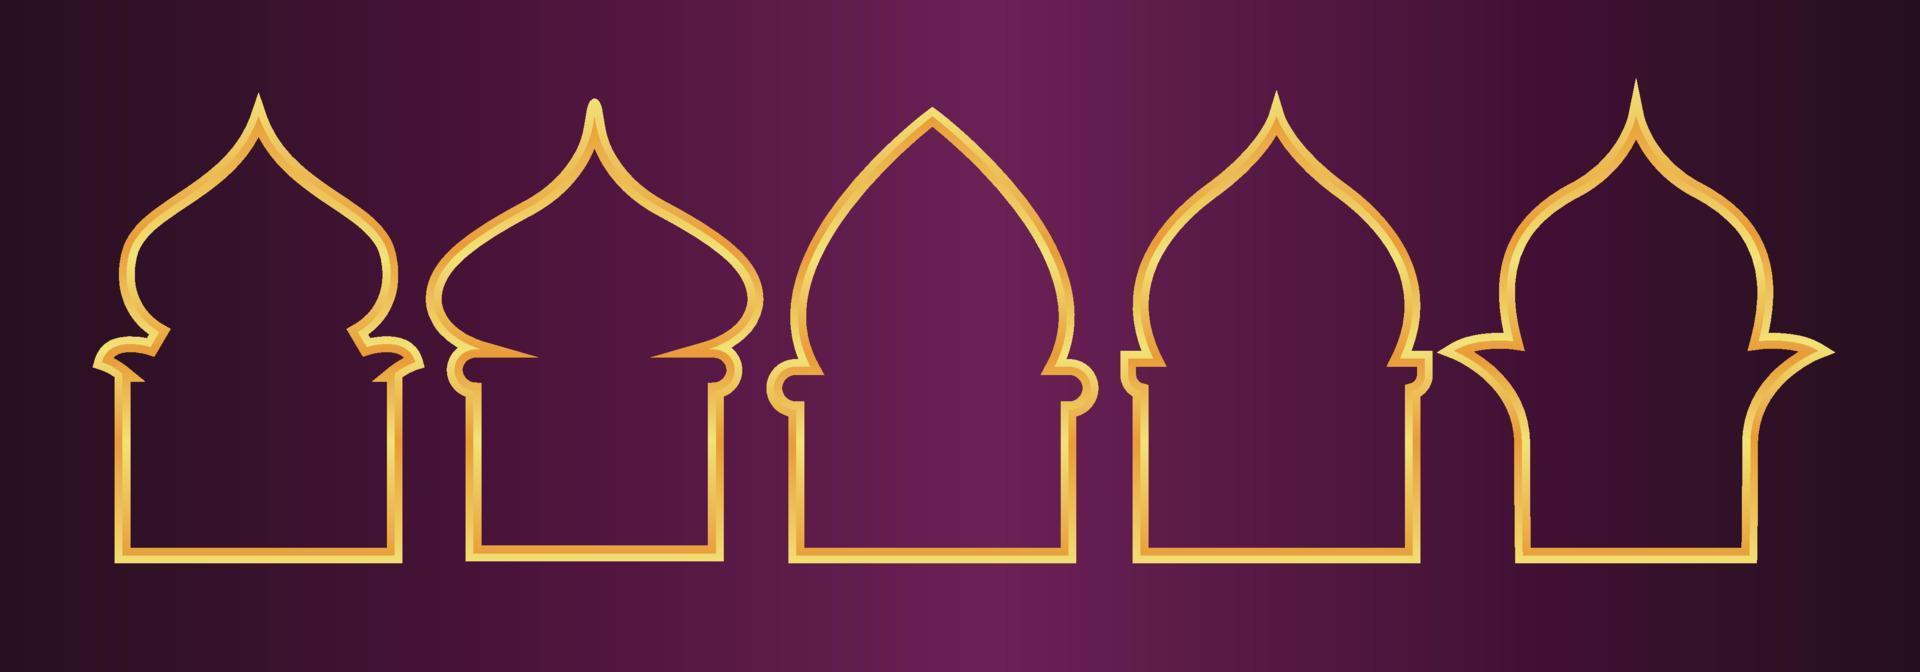 diseño dorado de ventanas árabes para la plantilla ramadan kareem vector